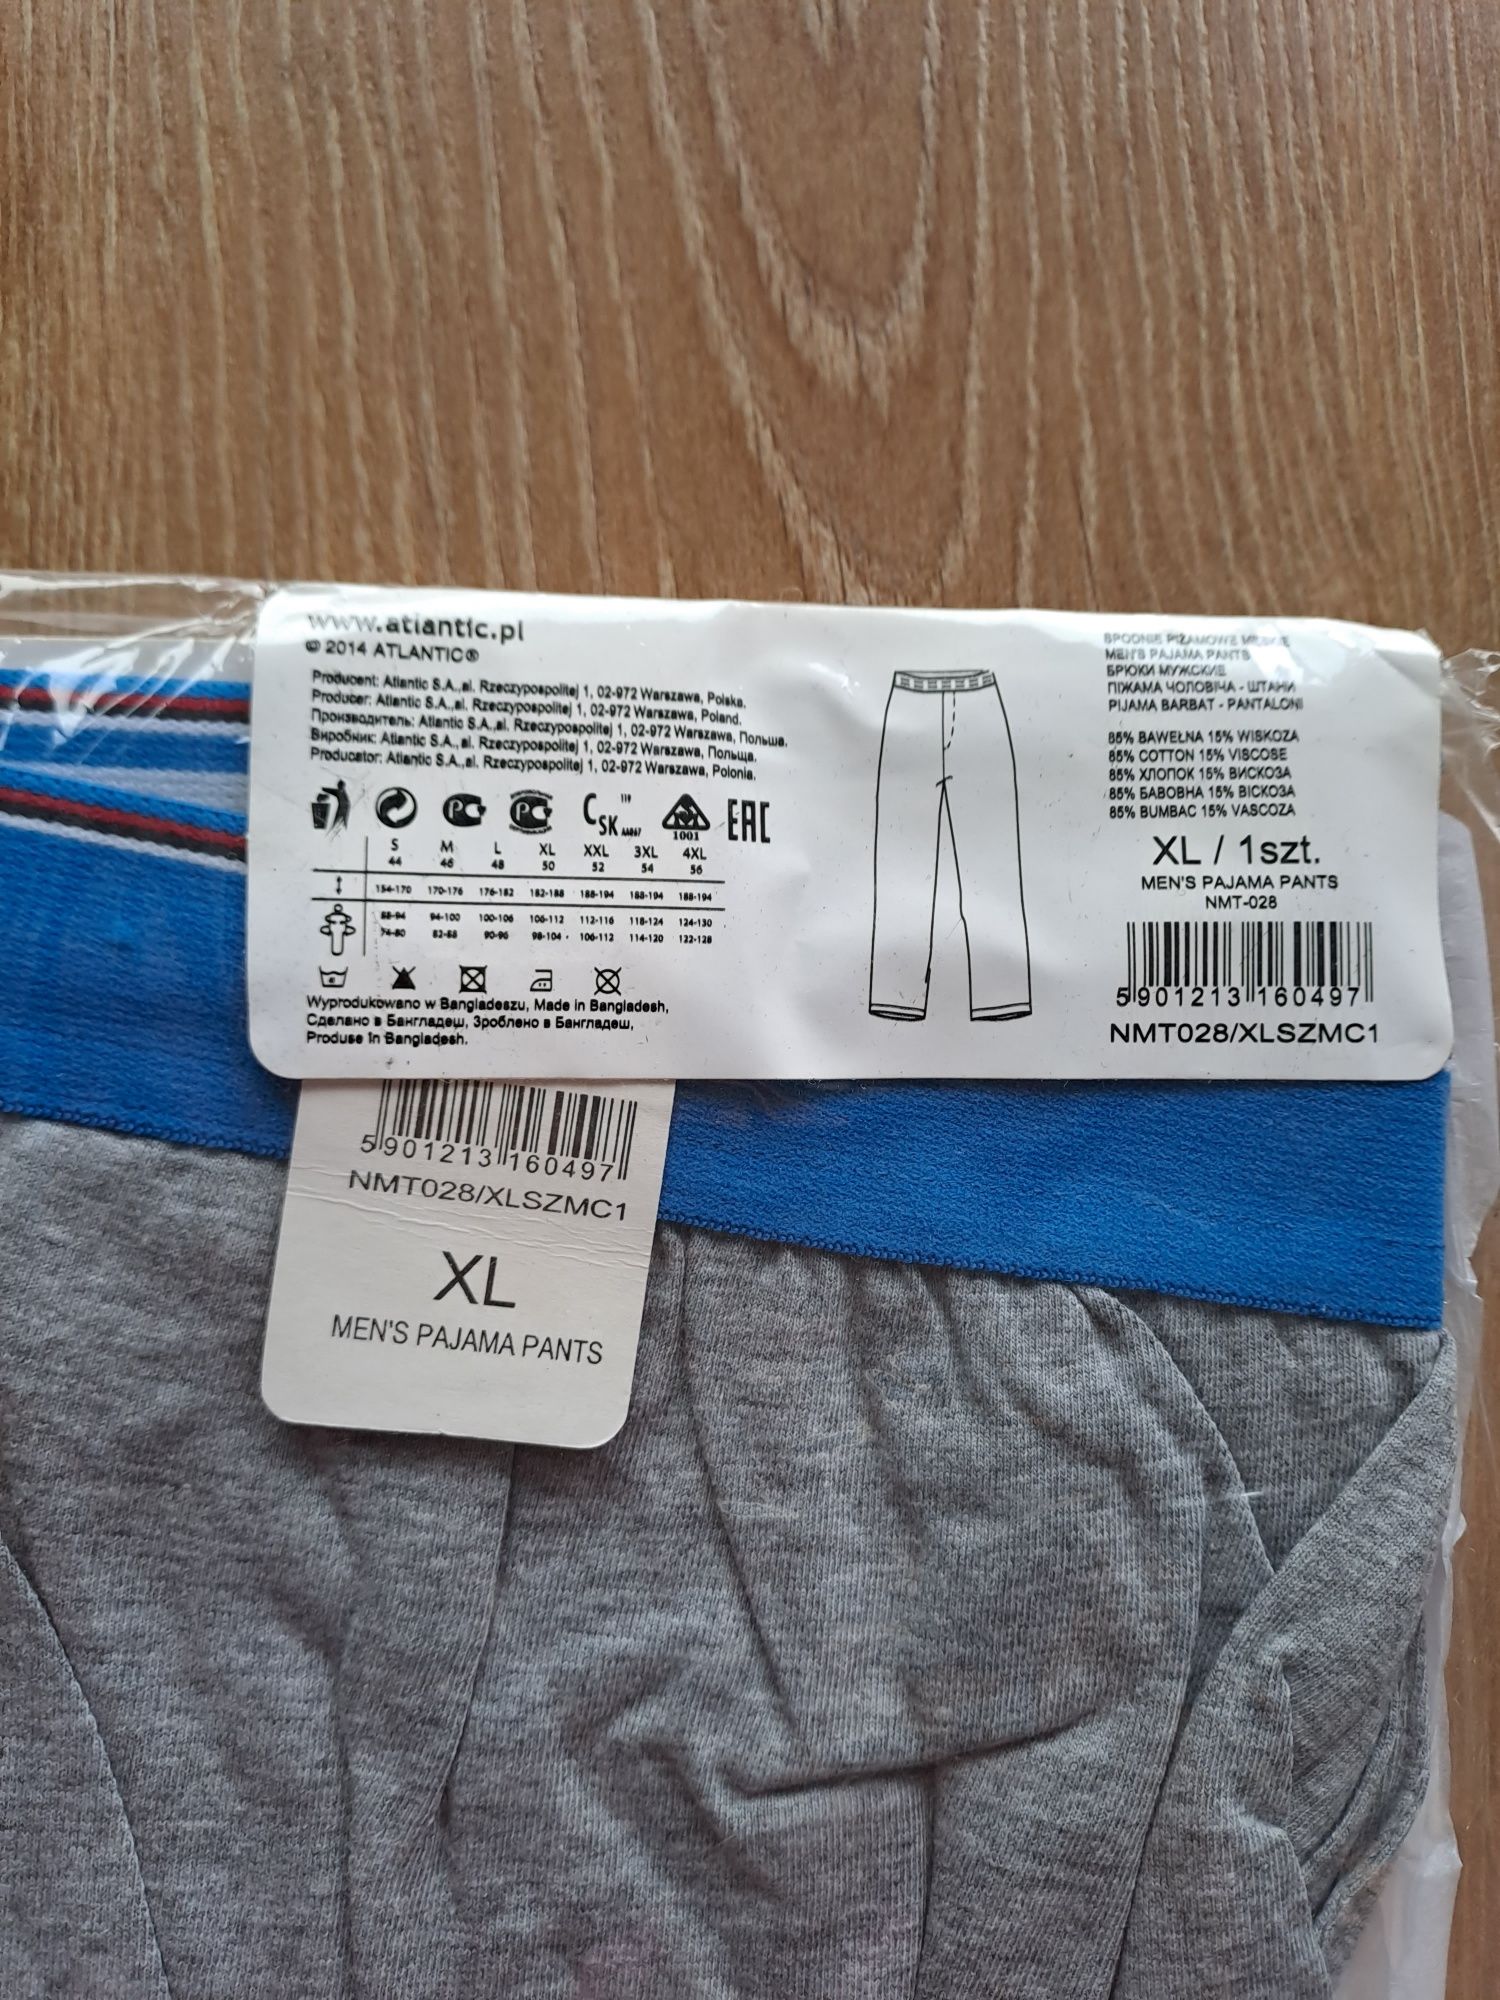 Spodnie piżamowe męskie Atlantic, rozmiar XL, długie